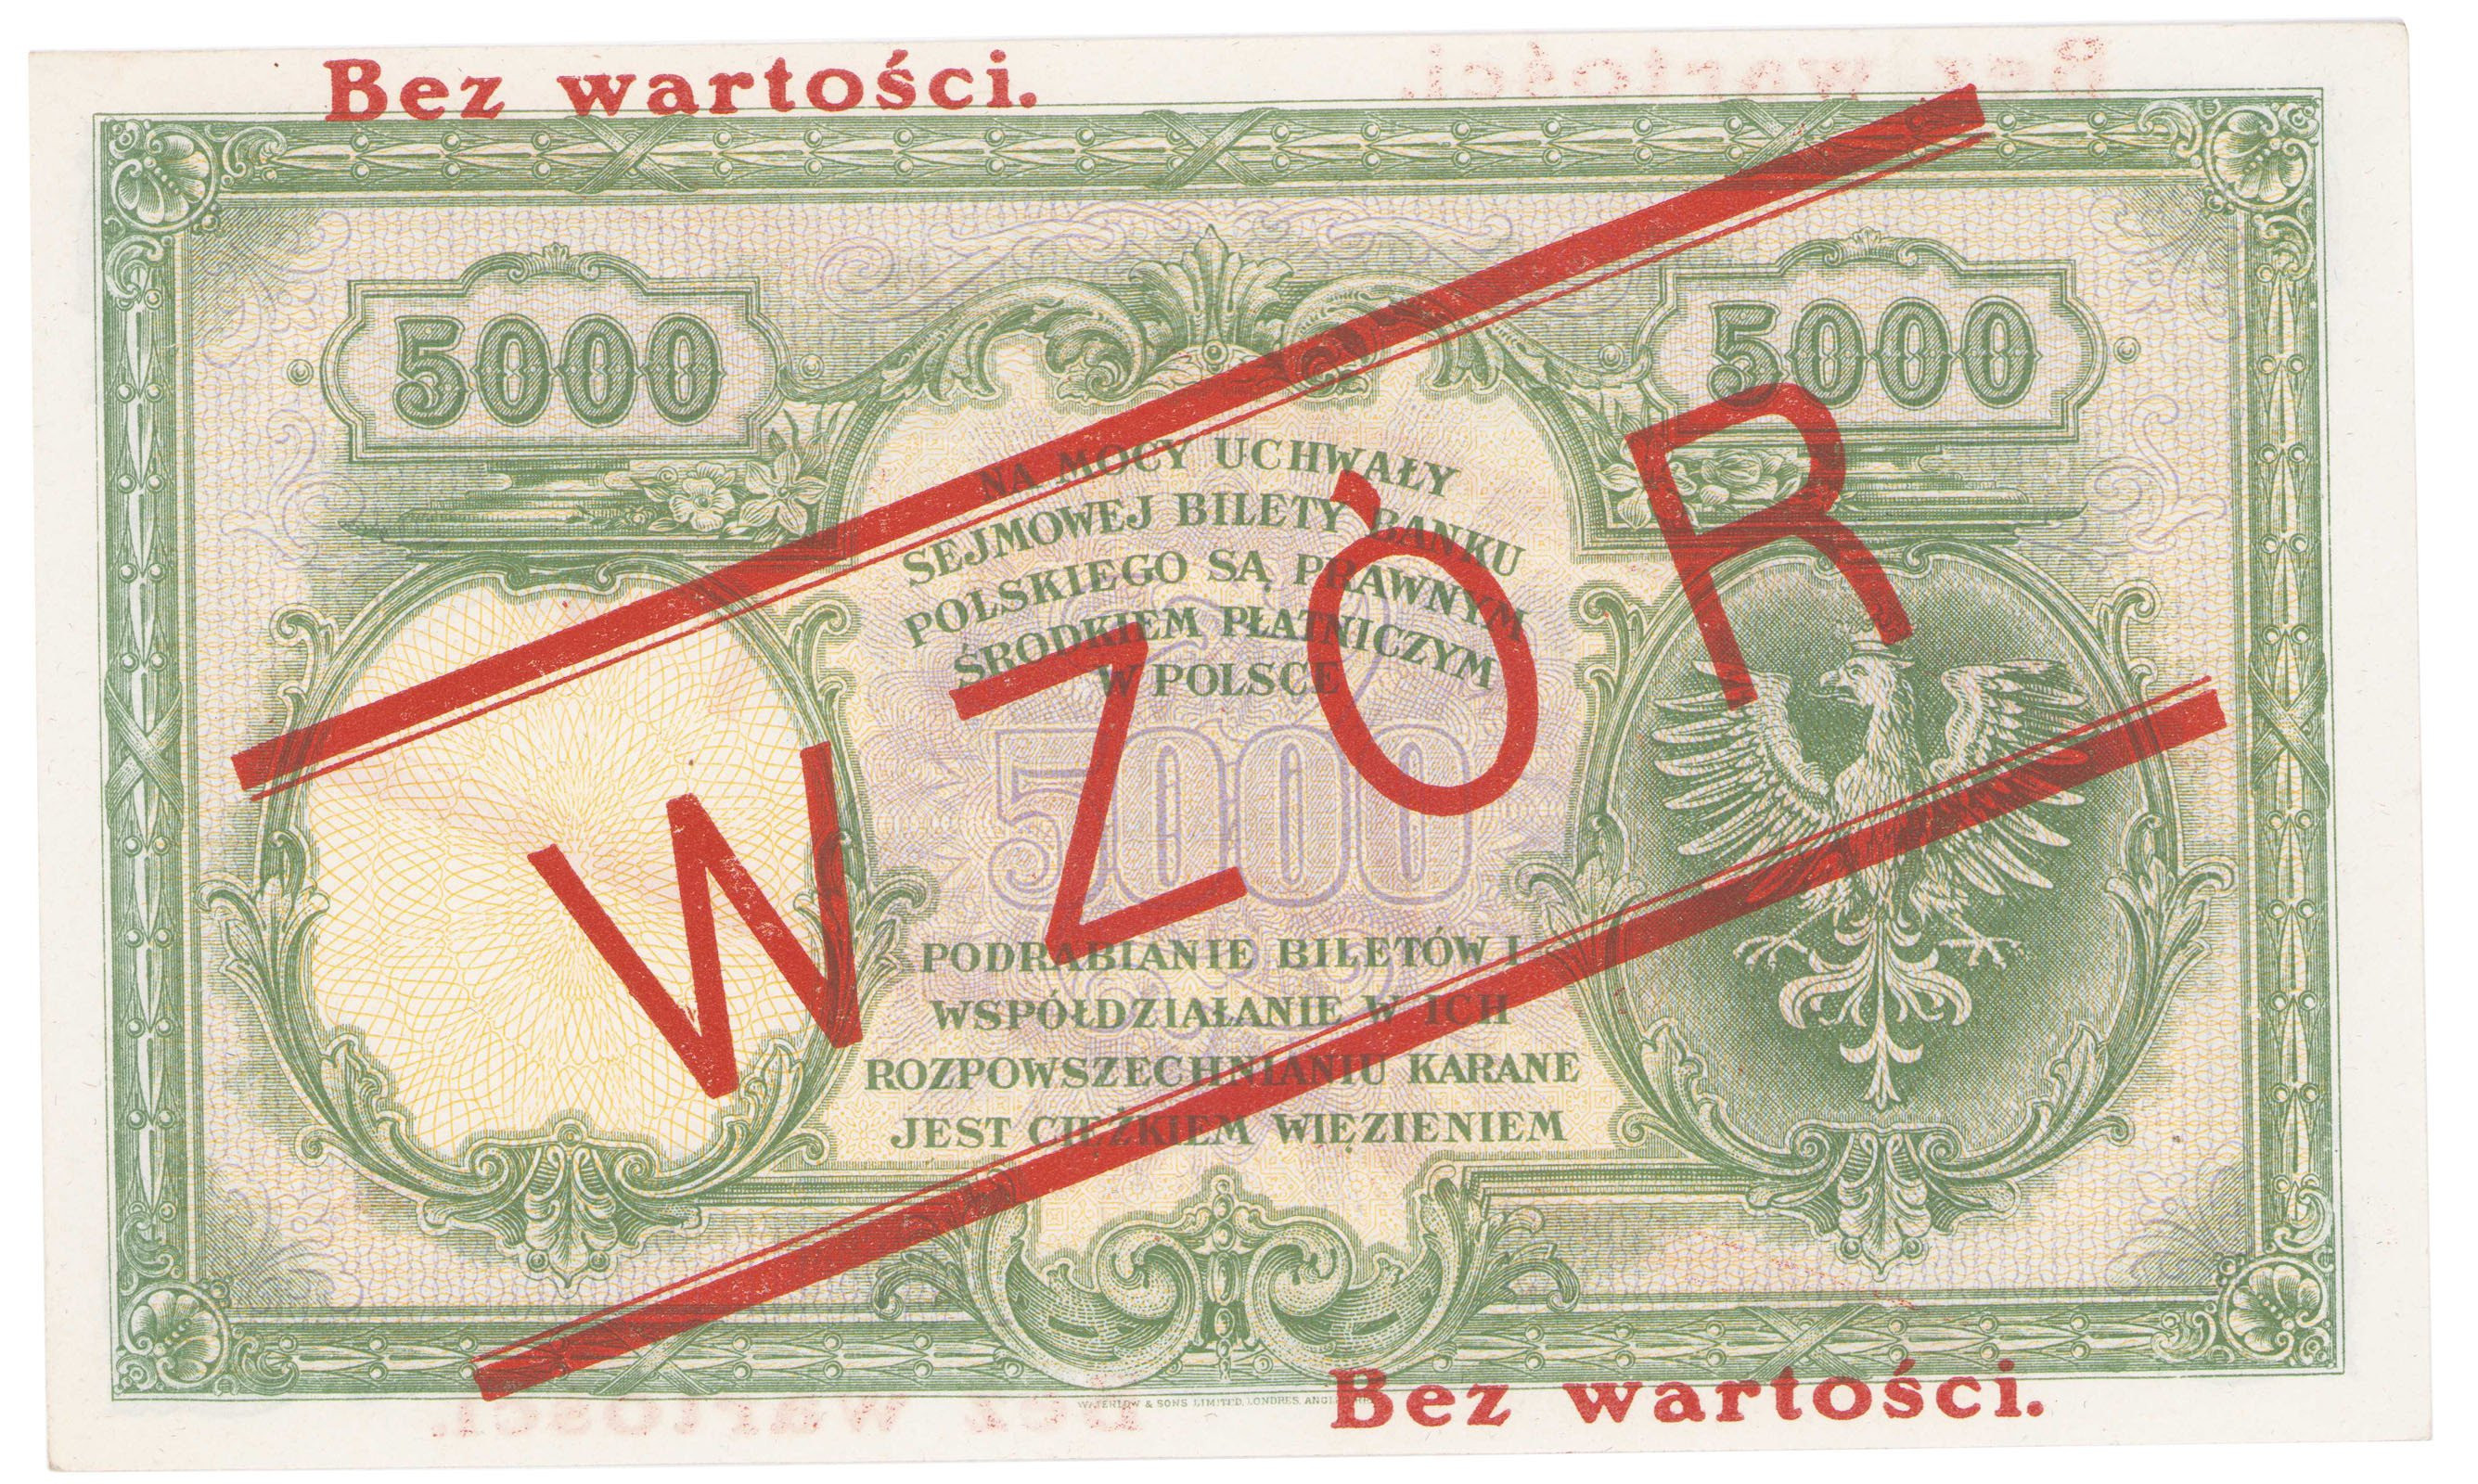 WZÓR 5.000 złotych 1919 Kościuszko seria A, wysoki nadruk - RZADKOŚĆ R5